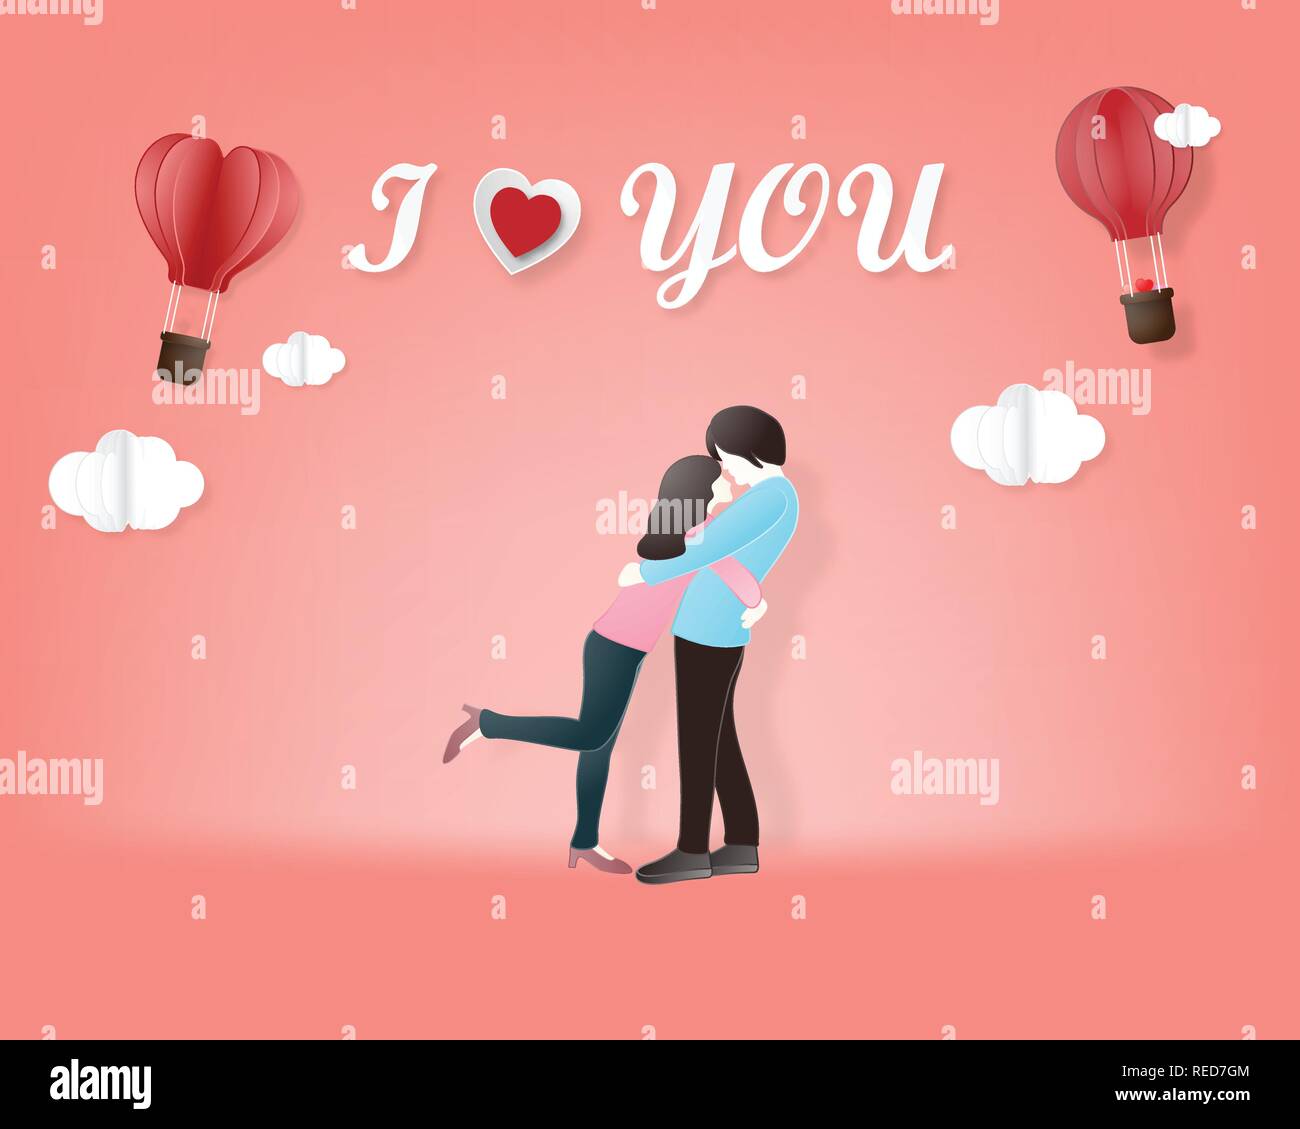 Kreative der Liebe Valentinstag Konzept. Liebe Paar Hug auf rosa Hintergrund. Vector Illustration Einladungskarte Valentinstag Papier schneiden Stil. Vale Stock Vektor